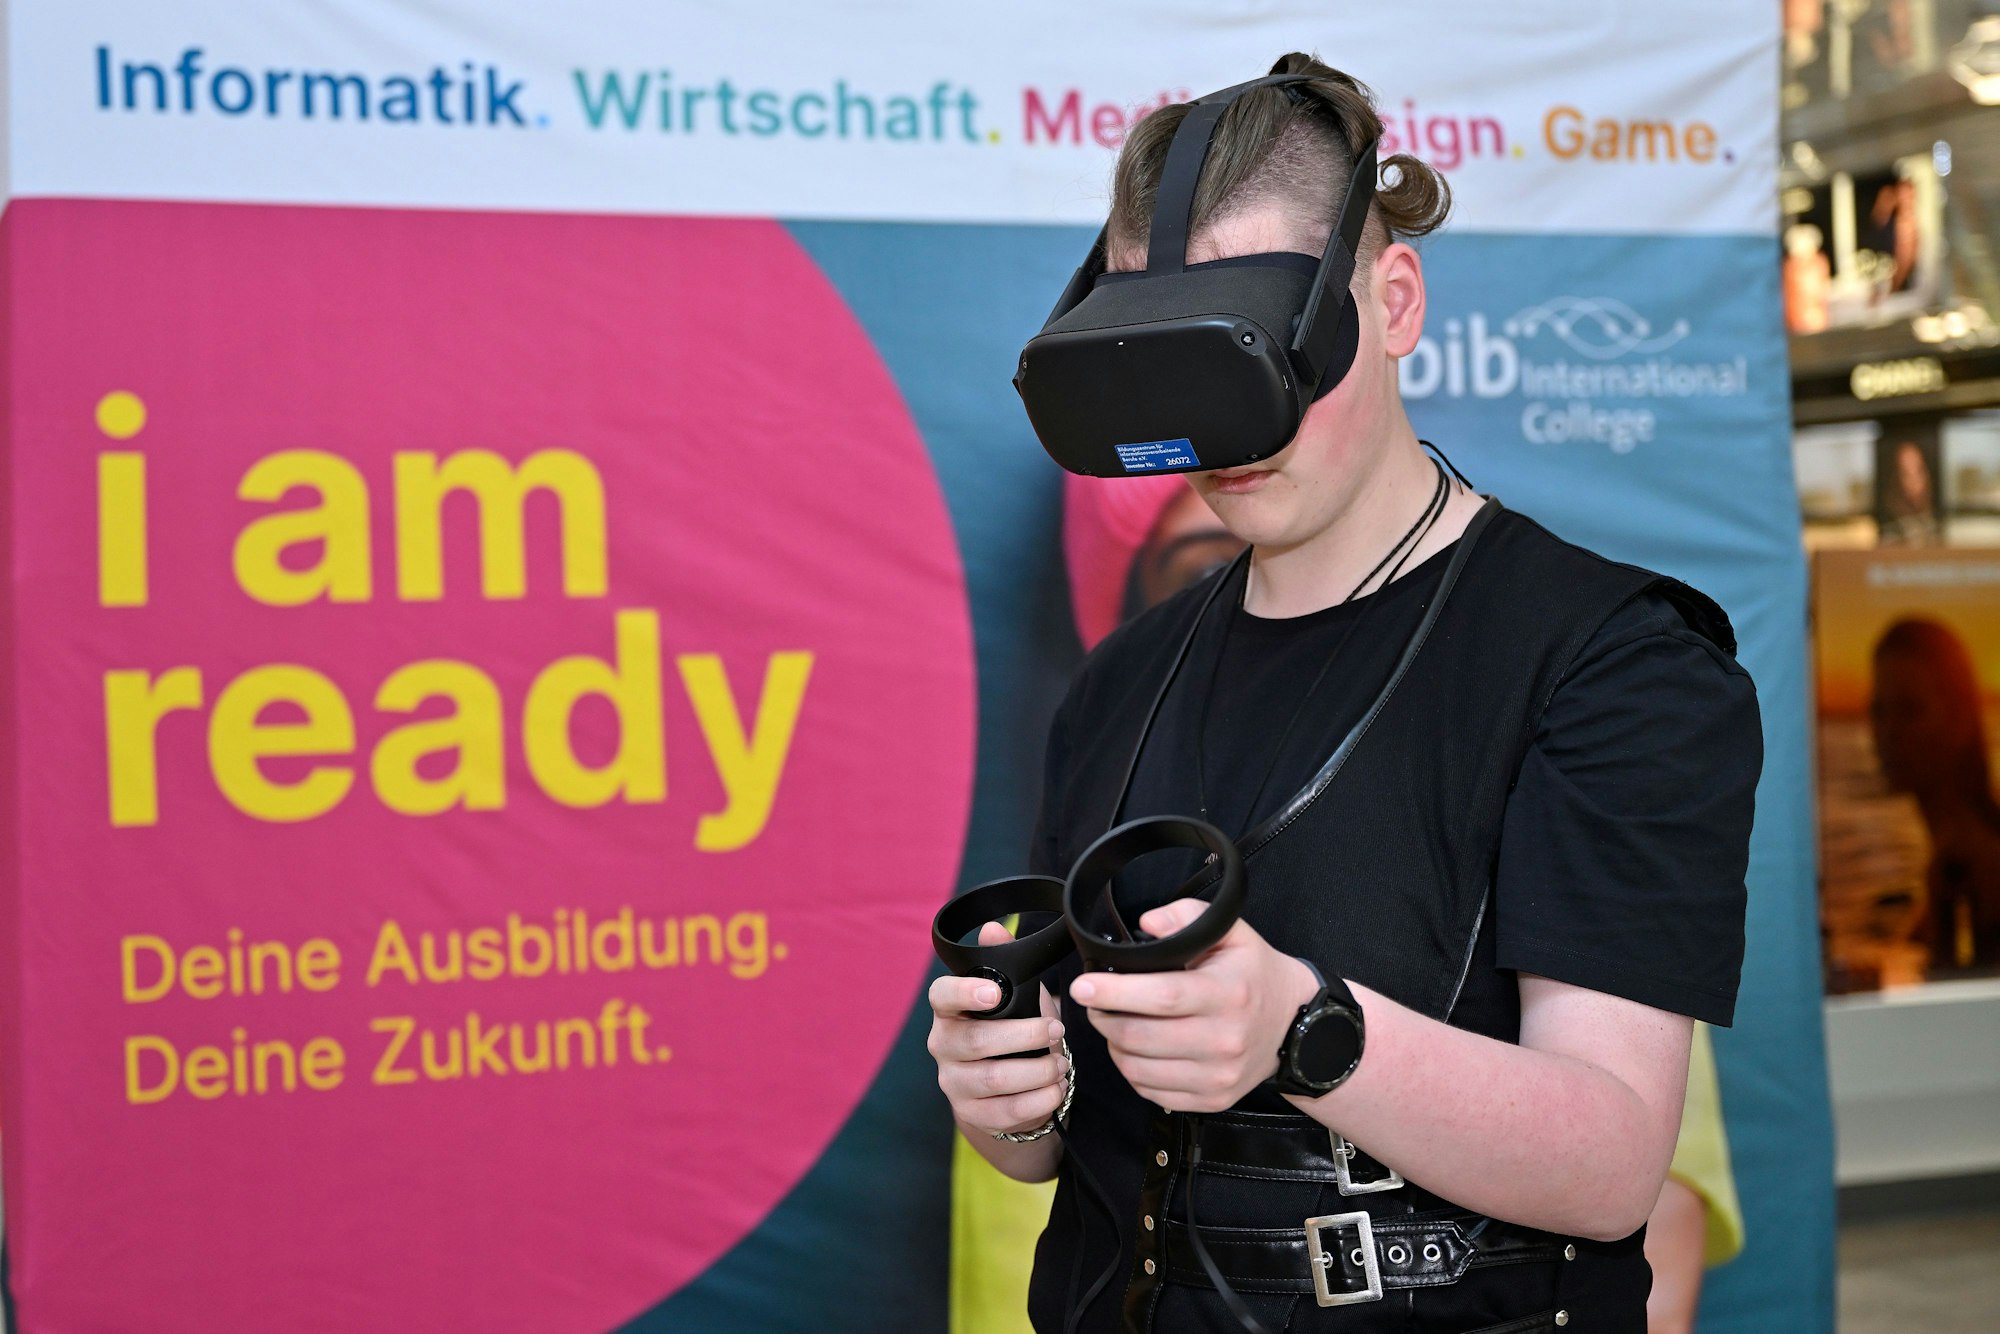 Das bib zeigte, welche Möglichkeiten eine Ausbildung im Game- und IT-Bereich eröffnen können. Ein Jugendlicher trägt eine VR-Brille.